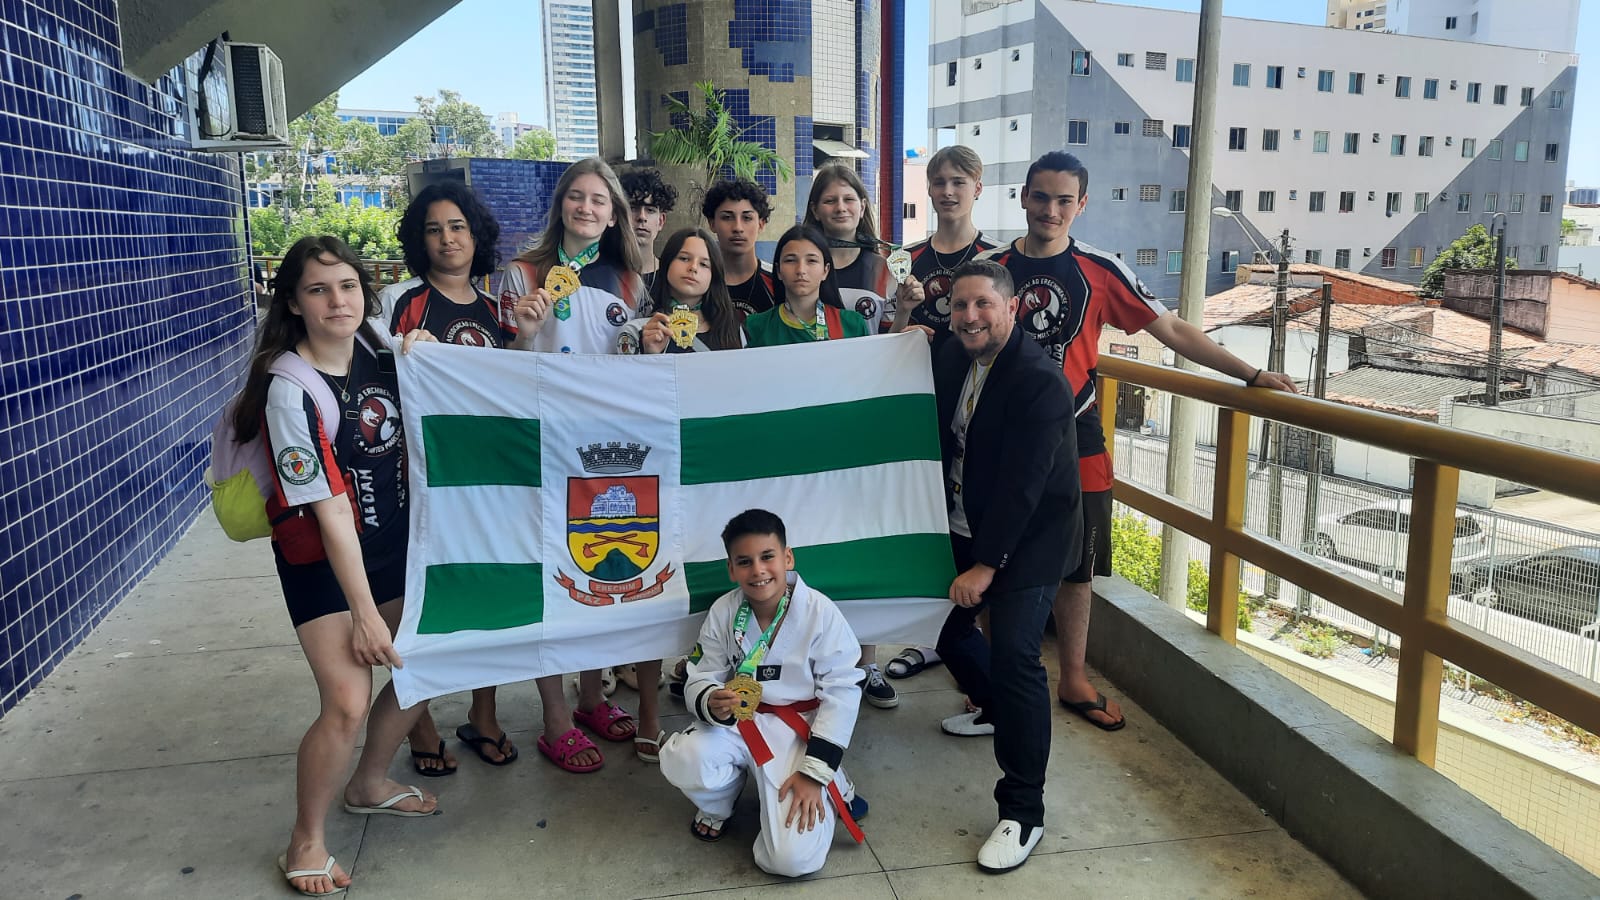 Atletas erechinenses sao campeoes no Supercampeonato Brasileiro de Taekwondo no Ceara